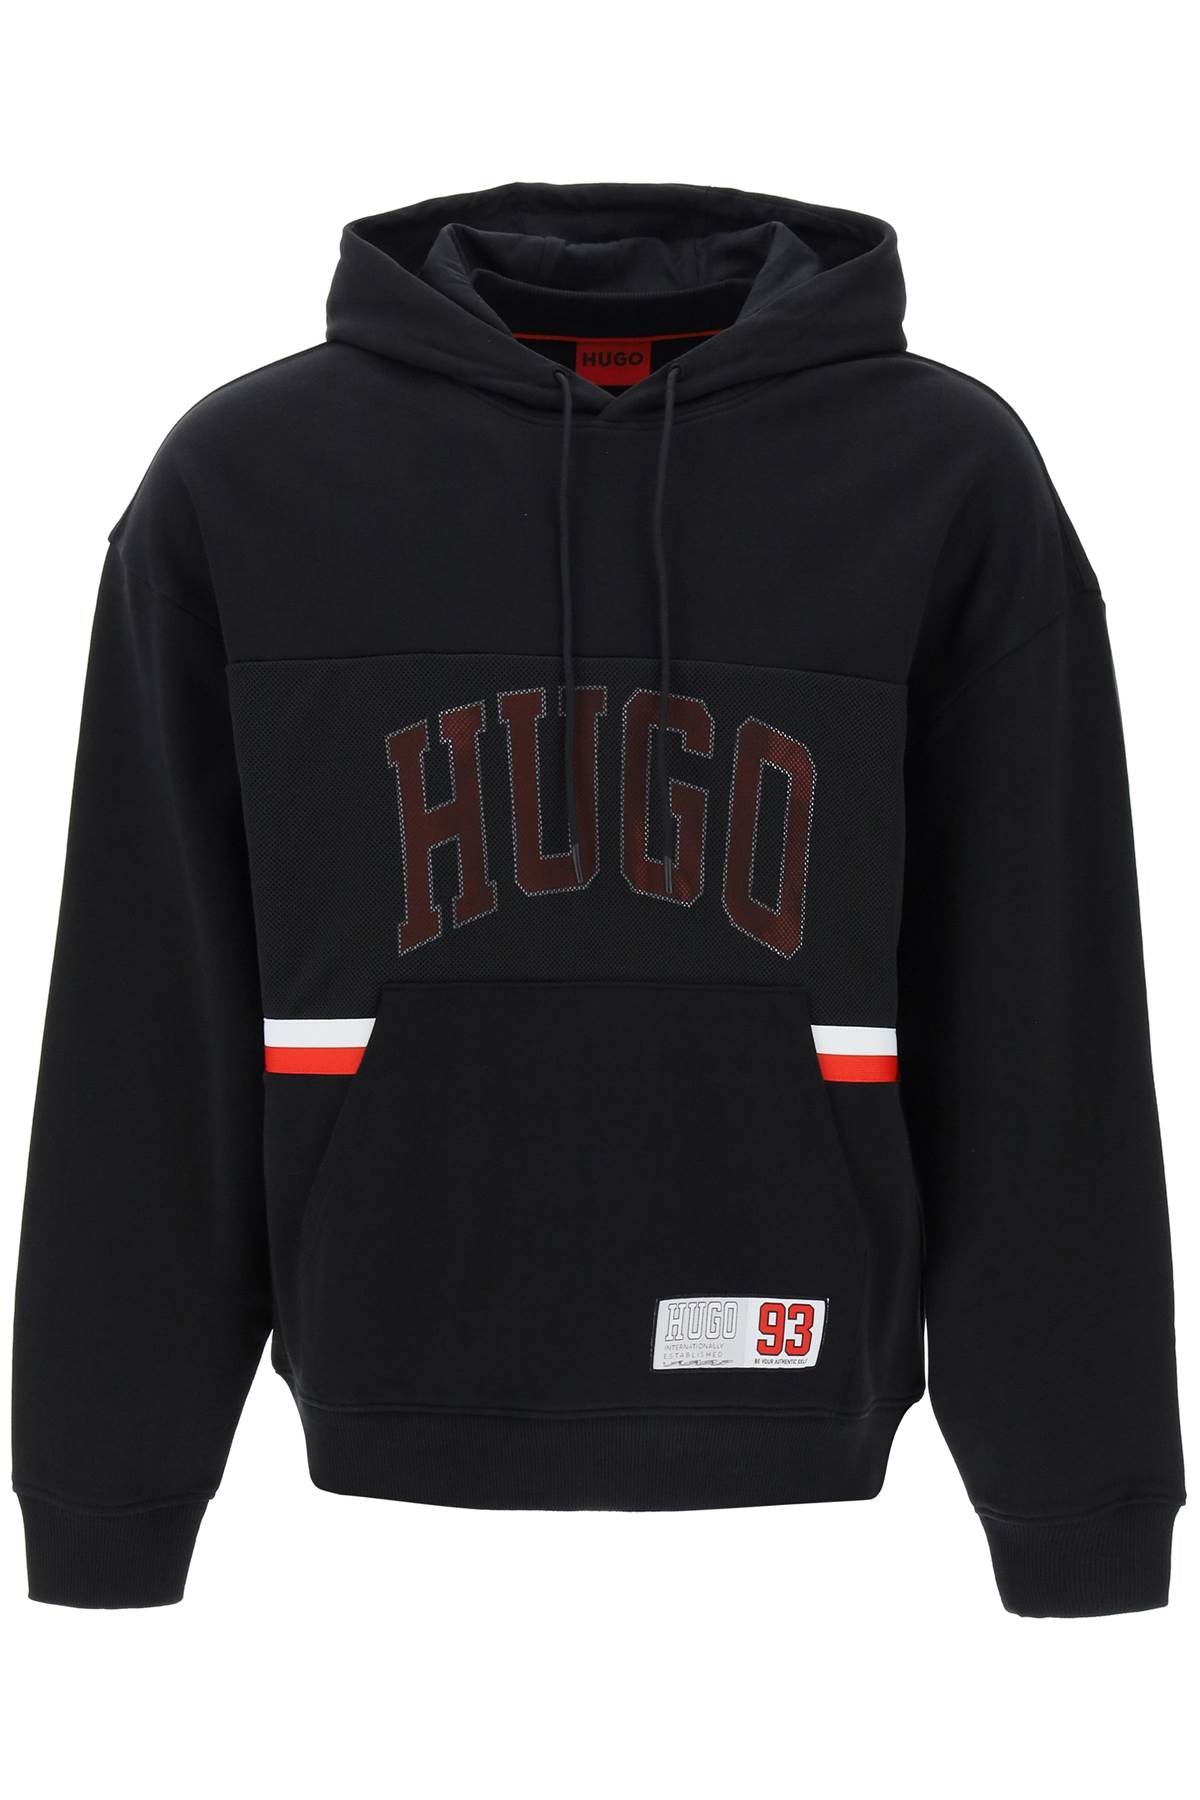 Hugo relaxed fit hoodie sweatshirt with-men > clothing > t-shirts and sweatshirts > sweatshirts-Hugo-Urbanheer